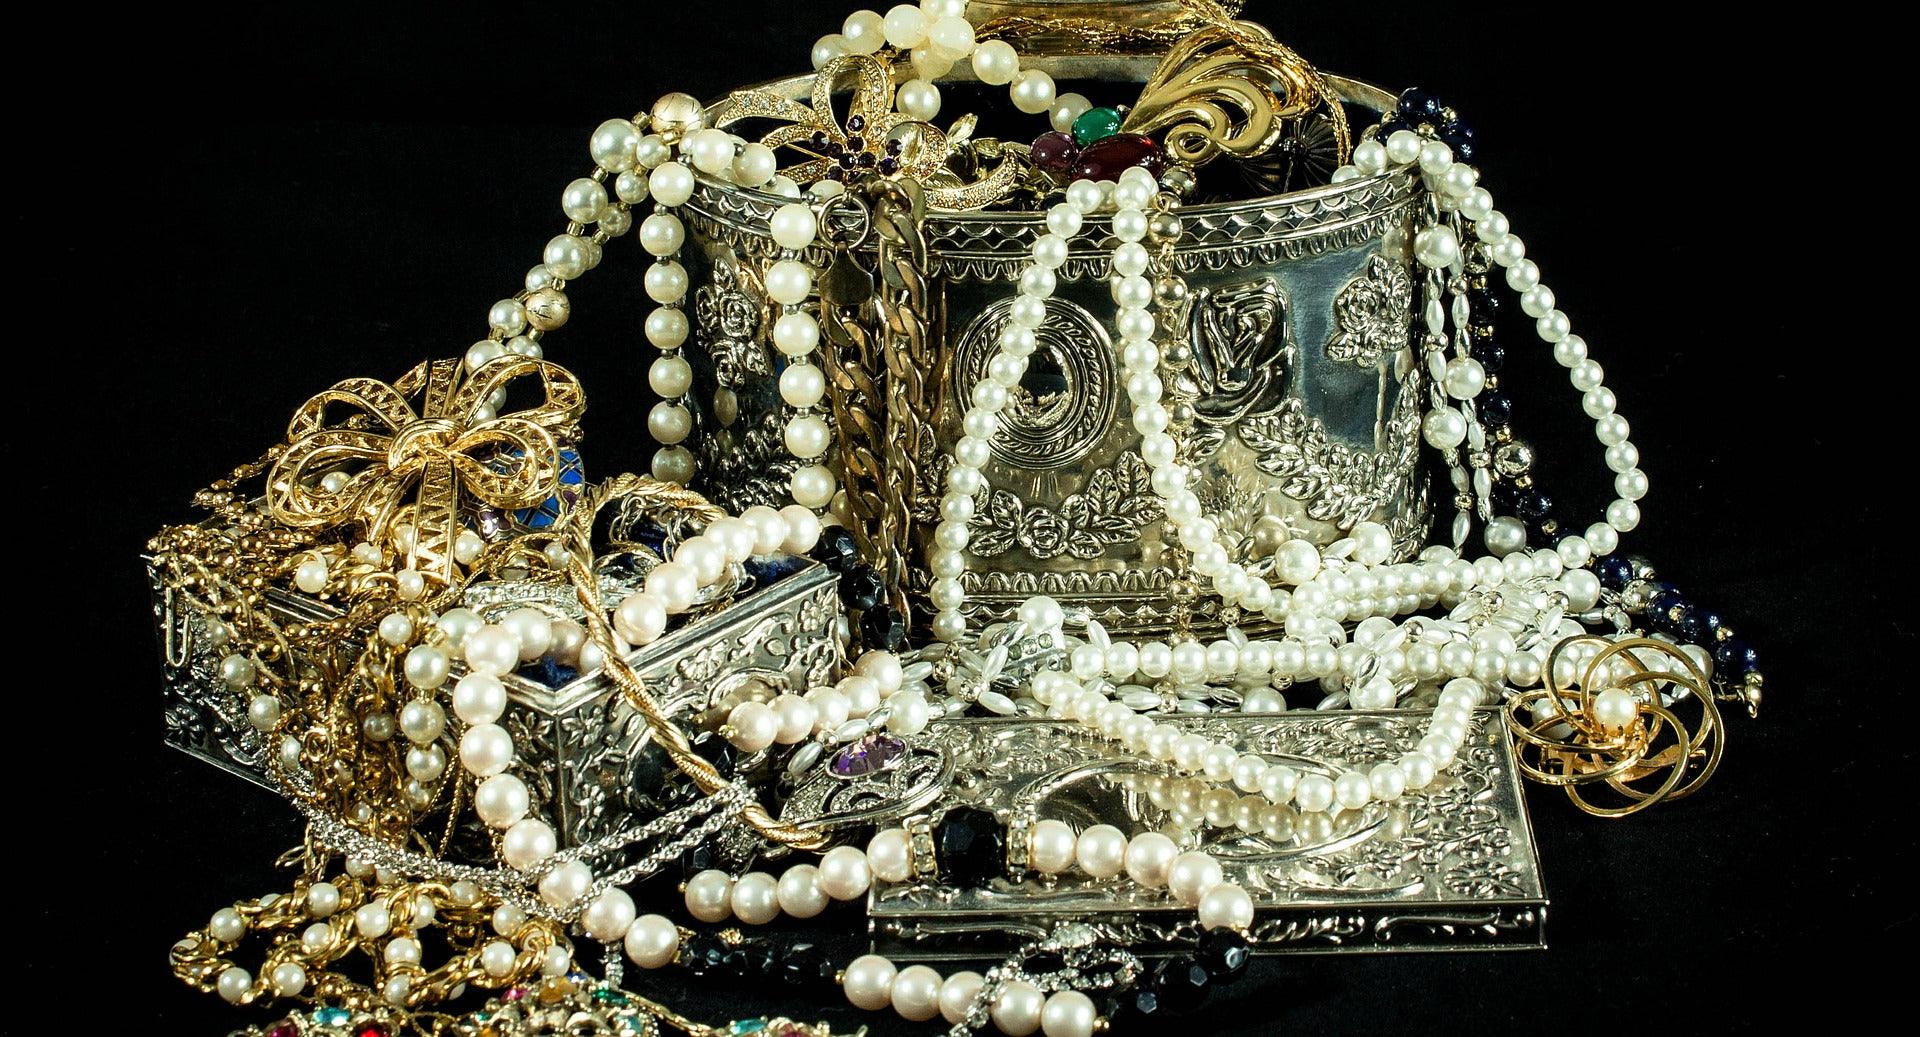 Mystic Topaz Jewelry | Heart Necklace Jewelry | Cat Jewelry Necklace